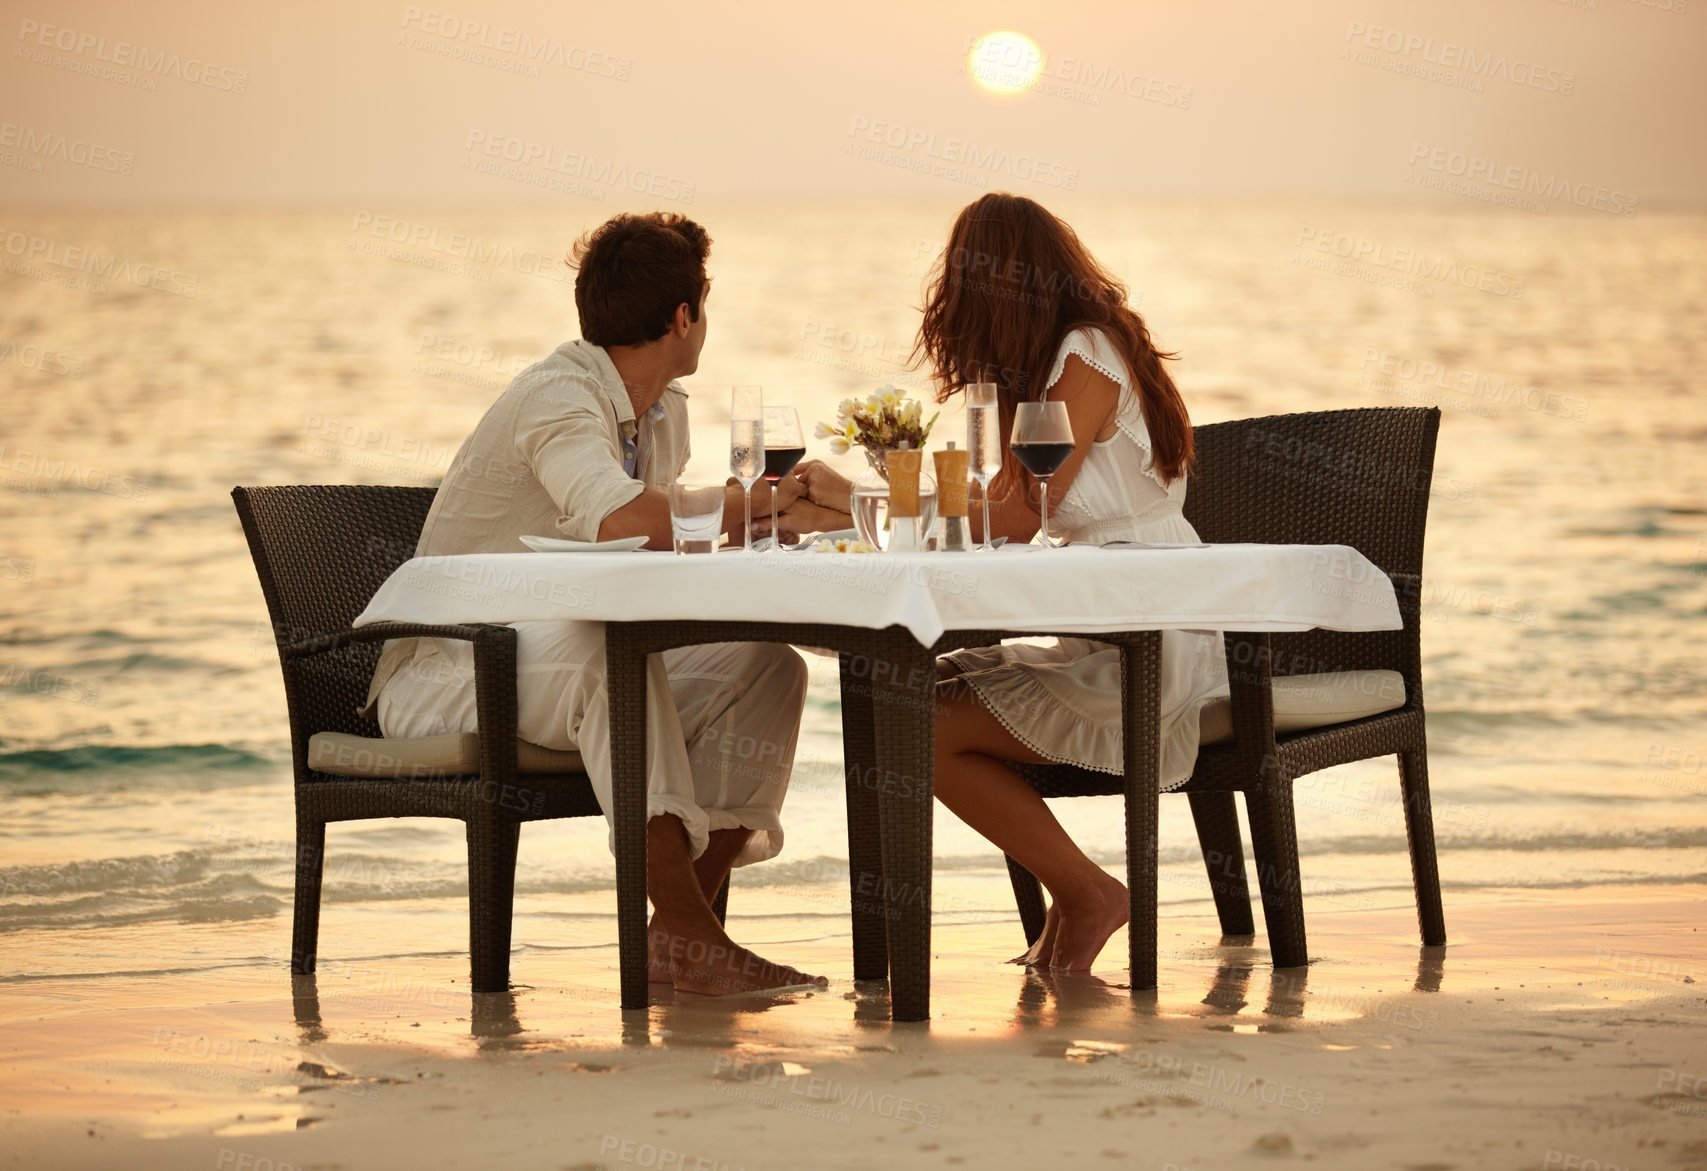 Наслаждаясь вкусным ужином нас радовала дружеская беседа. Романтическая встреча влюбленных. Столик у моря. Романтический вечер на море. Море романтика.